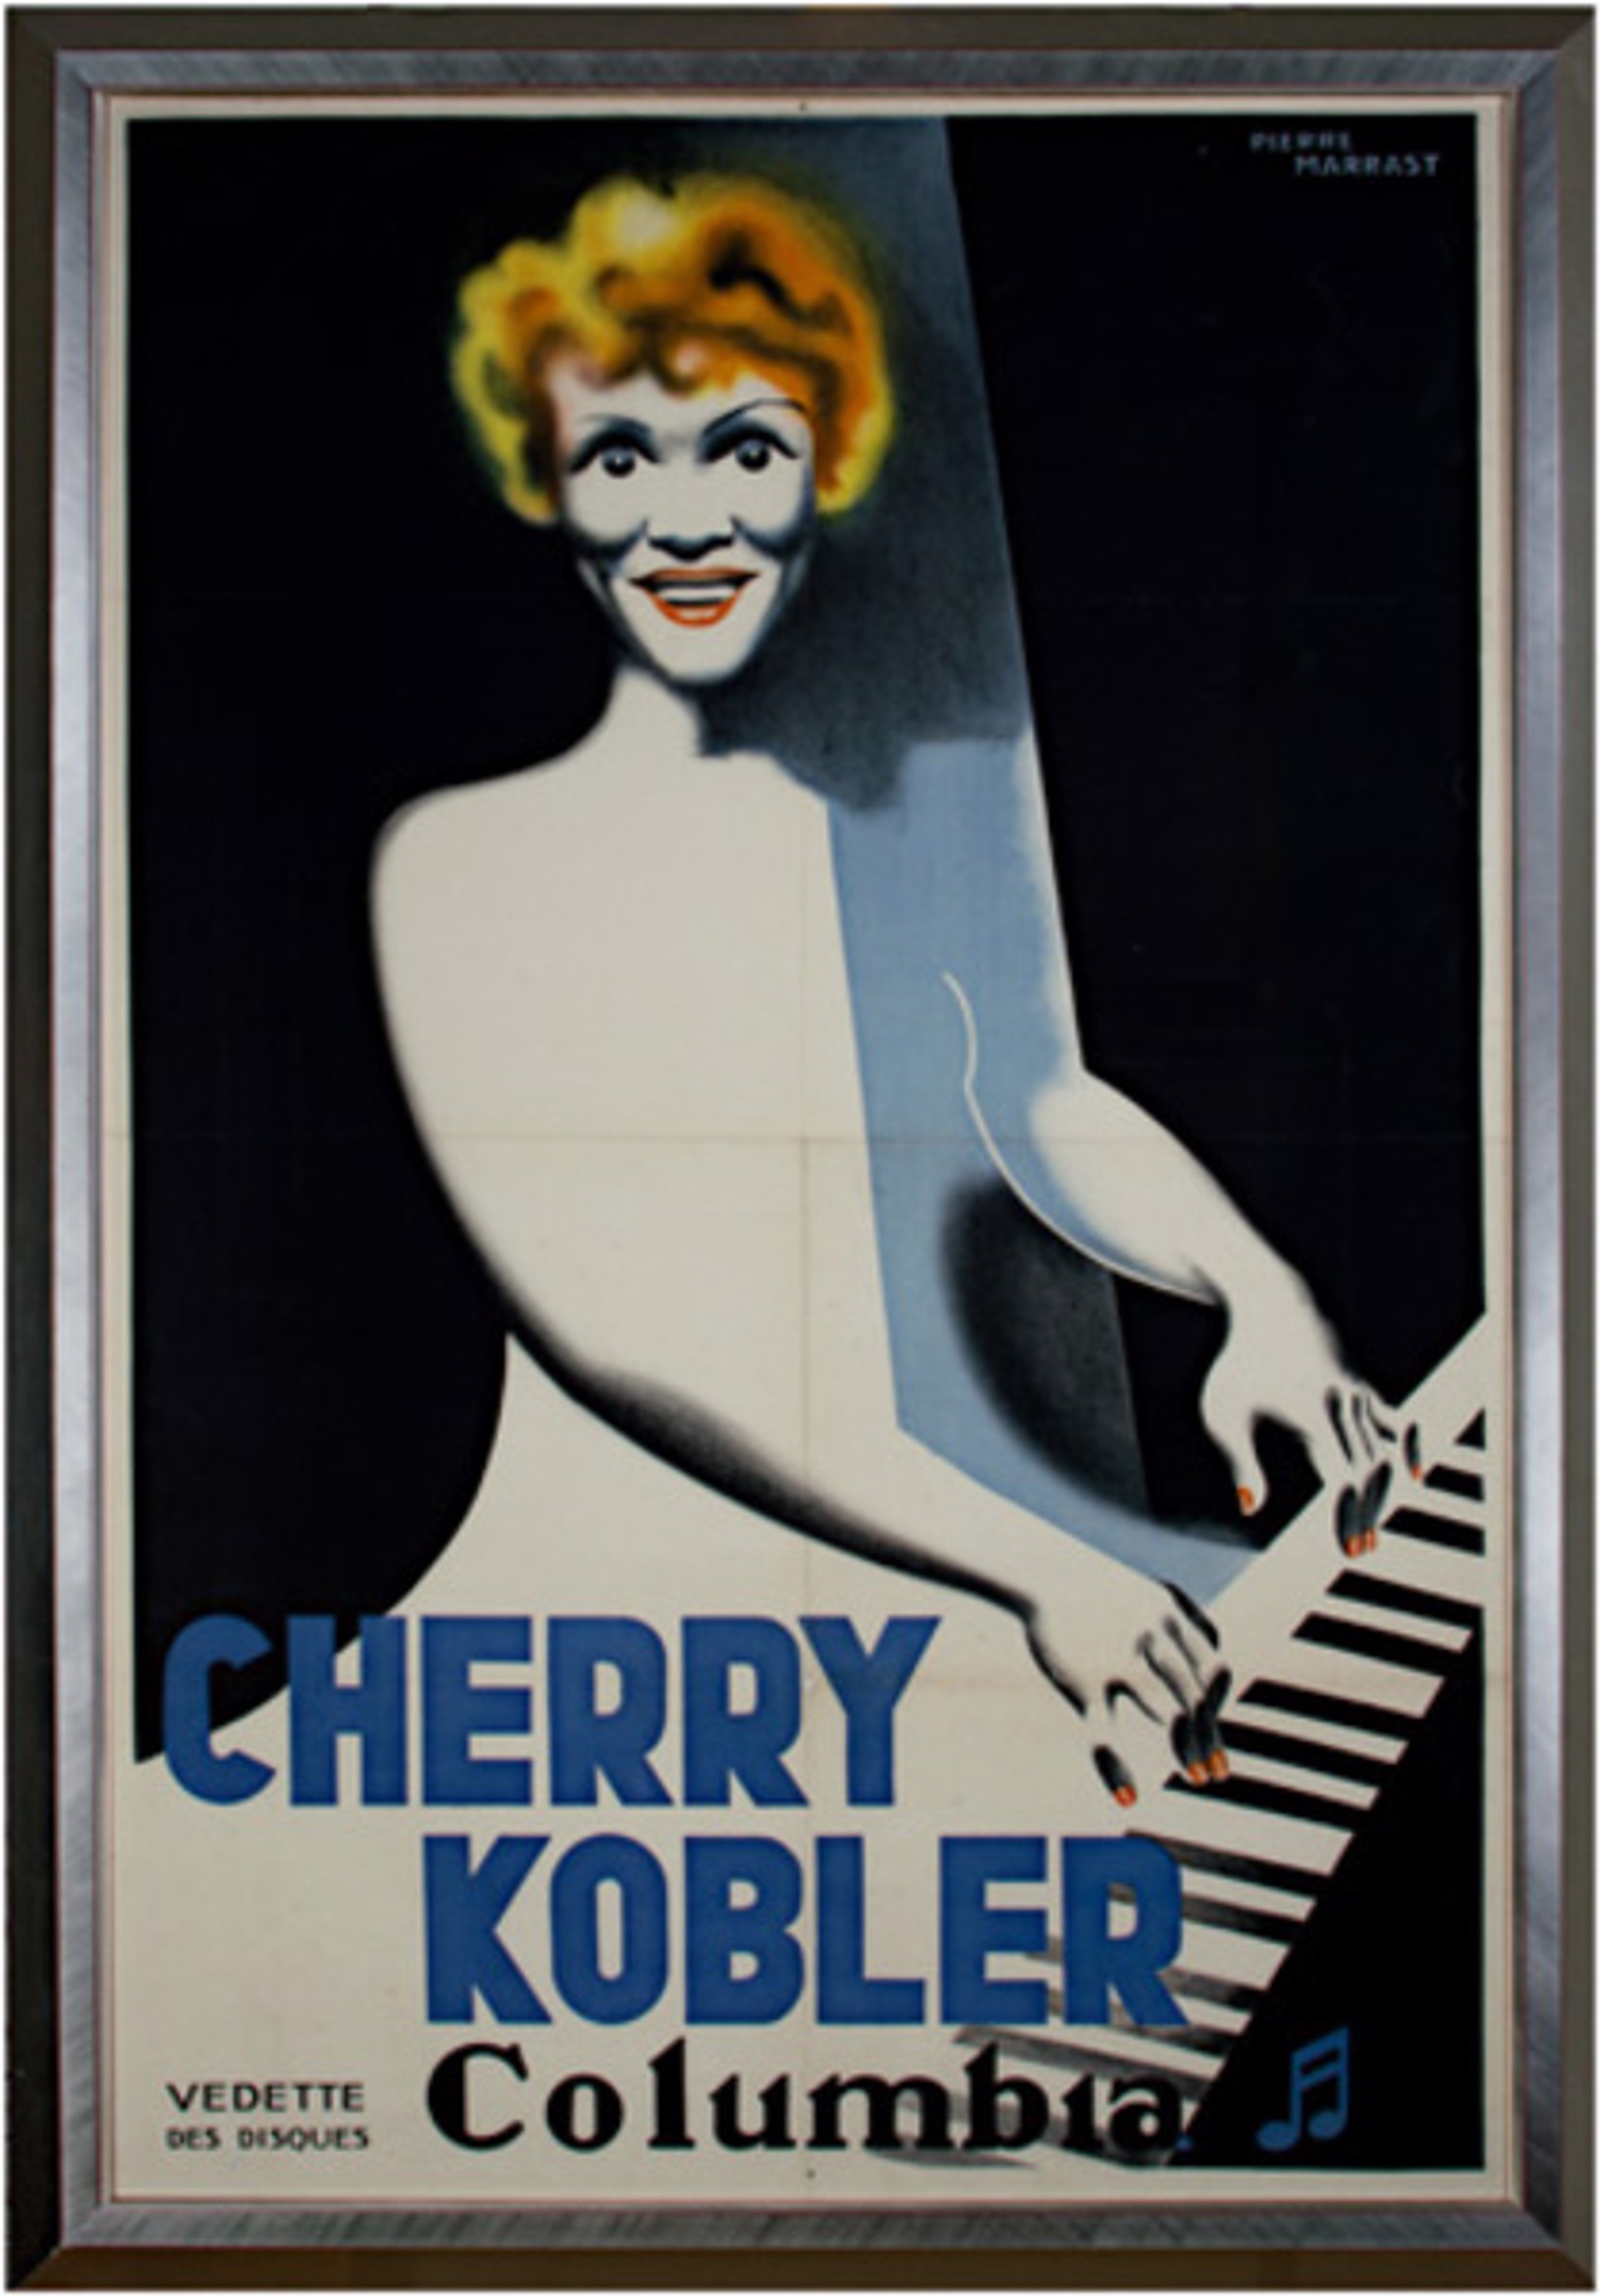 Cherry Kobler by Pierre Marrast